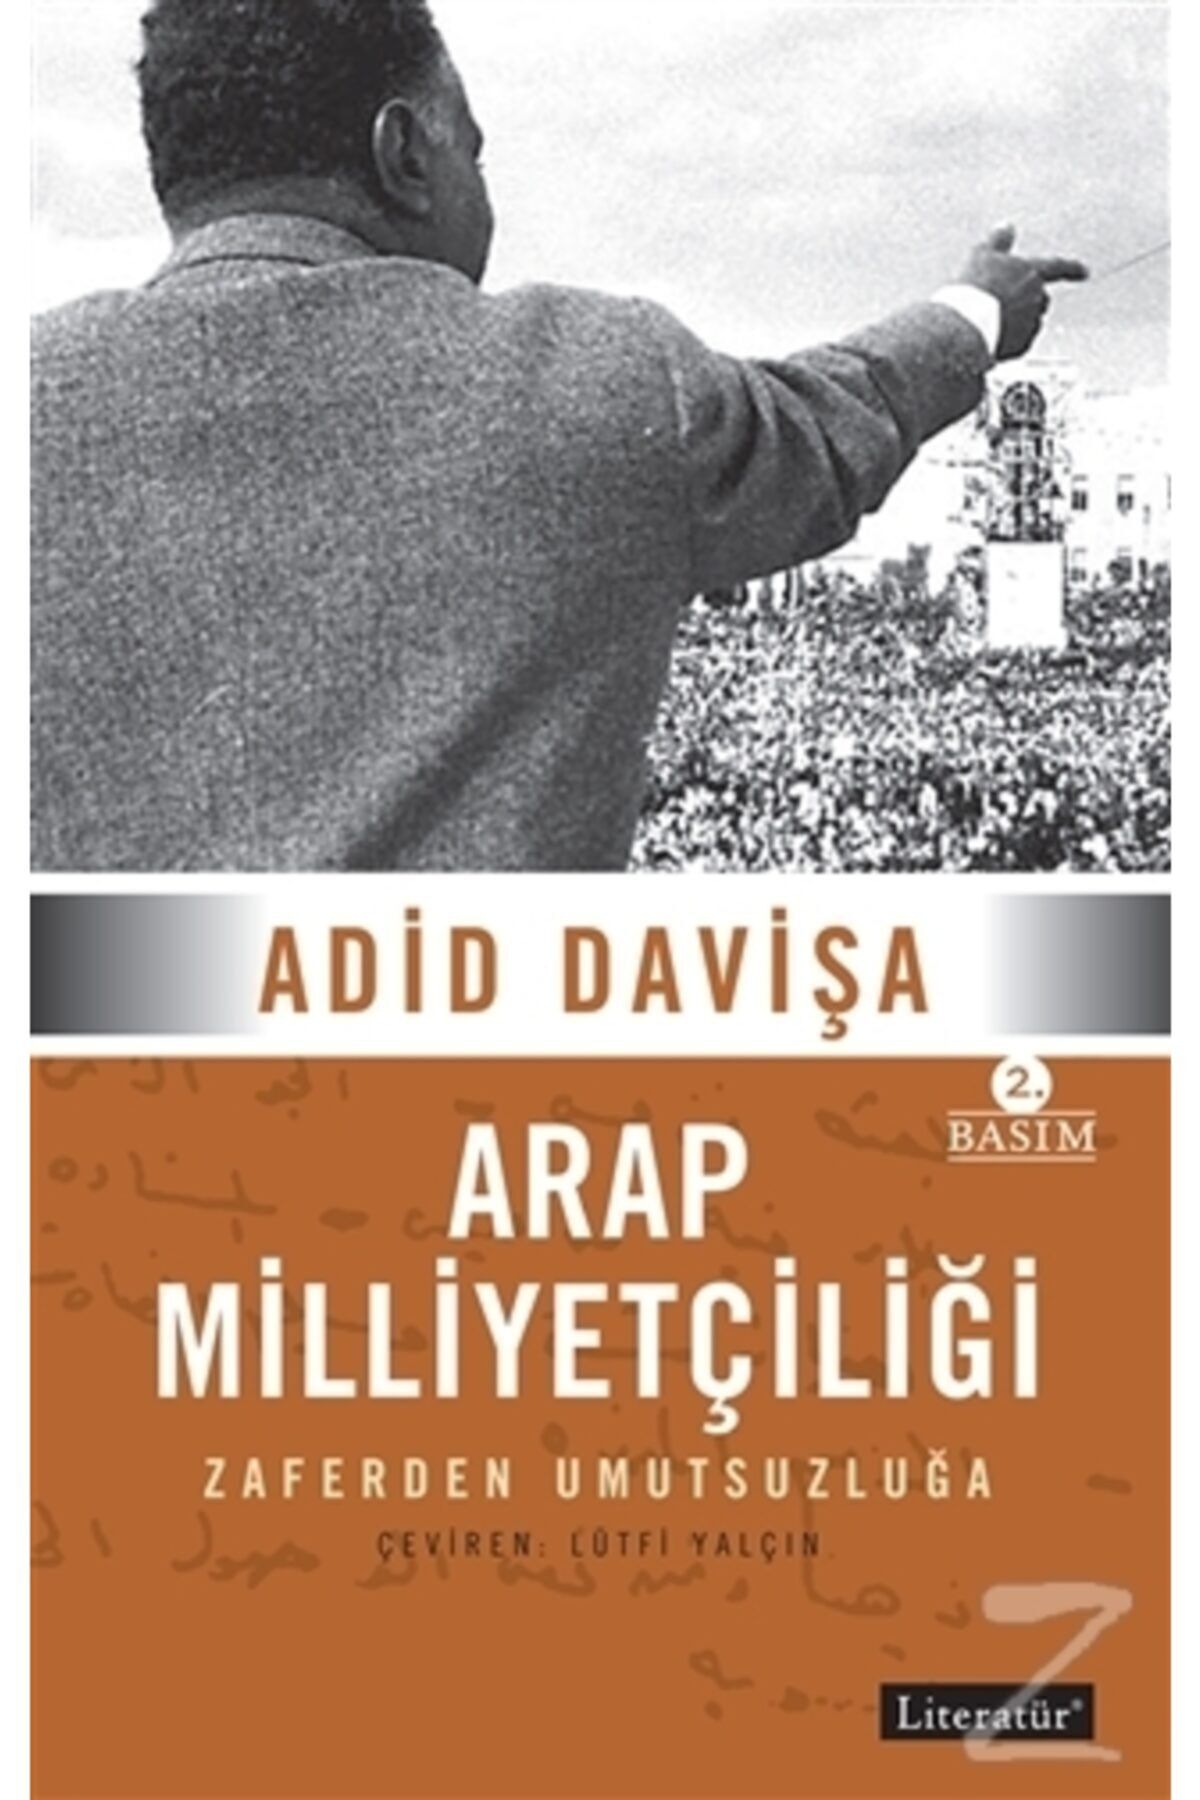 Literatür Yayınları Arap Milliyetçiliği - Adid Davişa